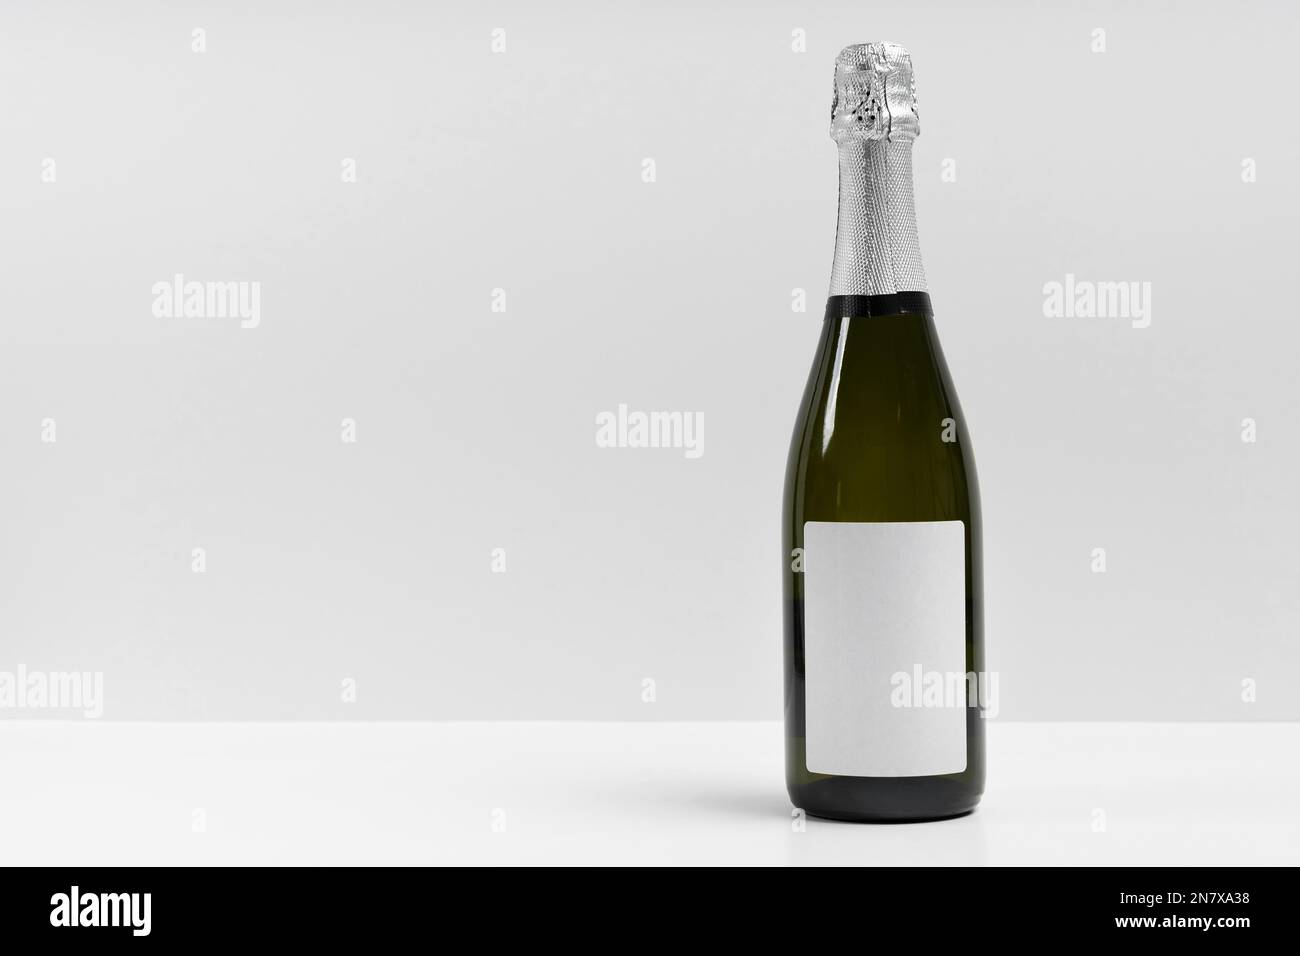 Bouteille de champagne avec un fond blanc Banque D'Images